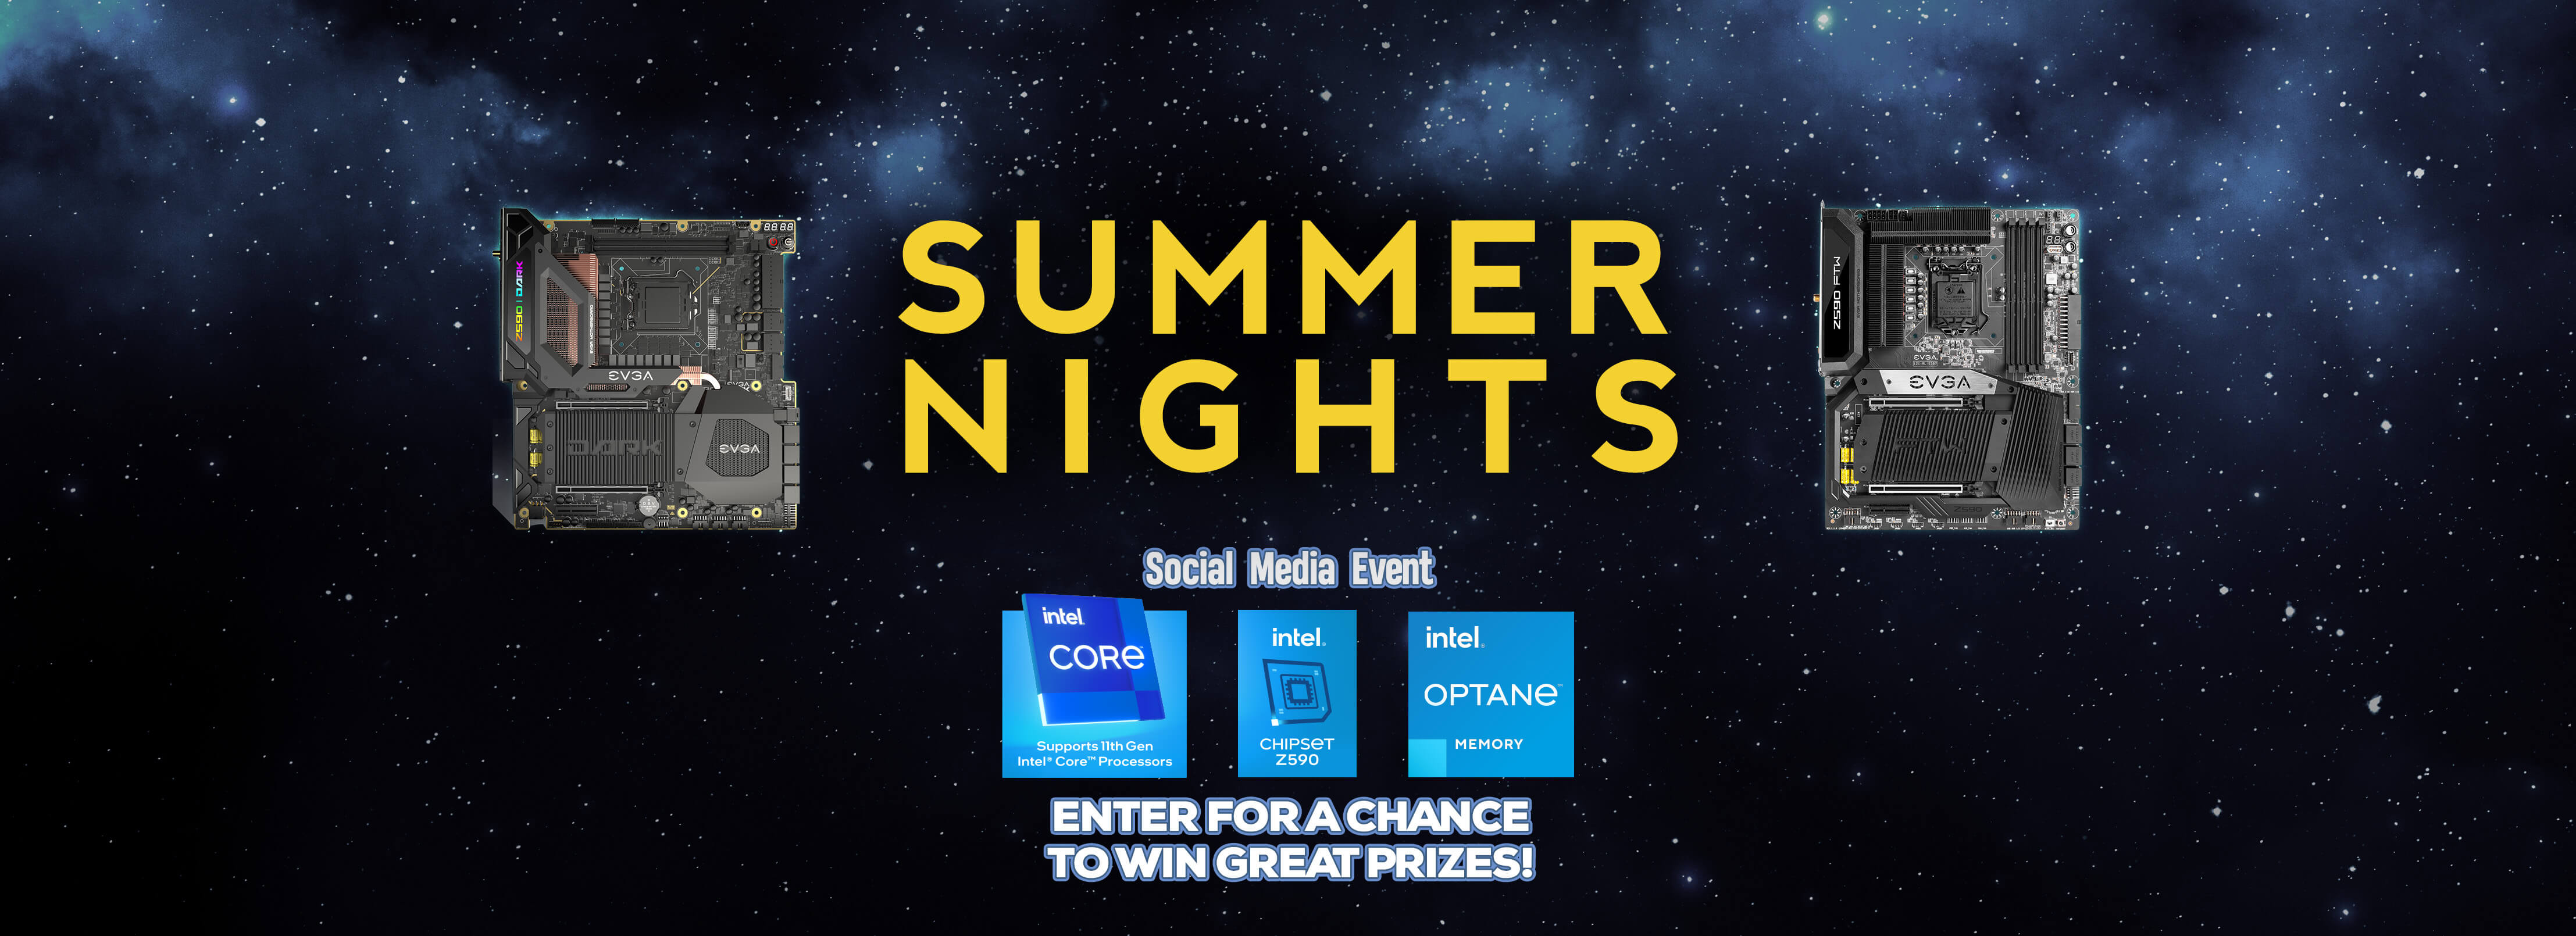 Summer Nights Social Media Event